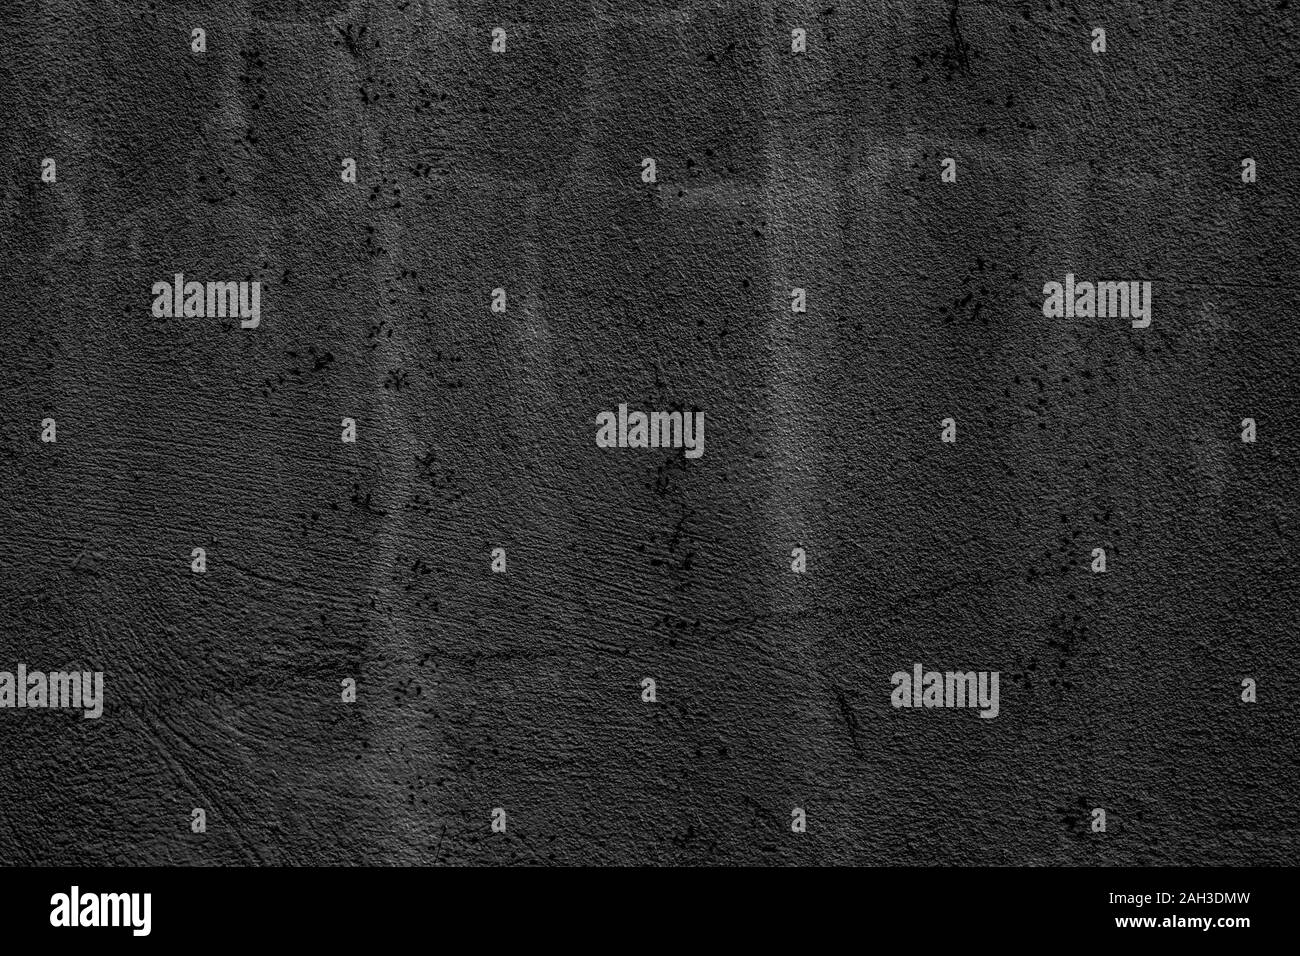 Arrière-plan de couleur gris avec des textures de différentes nuances de gris Banque D'Images